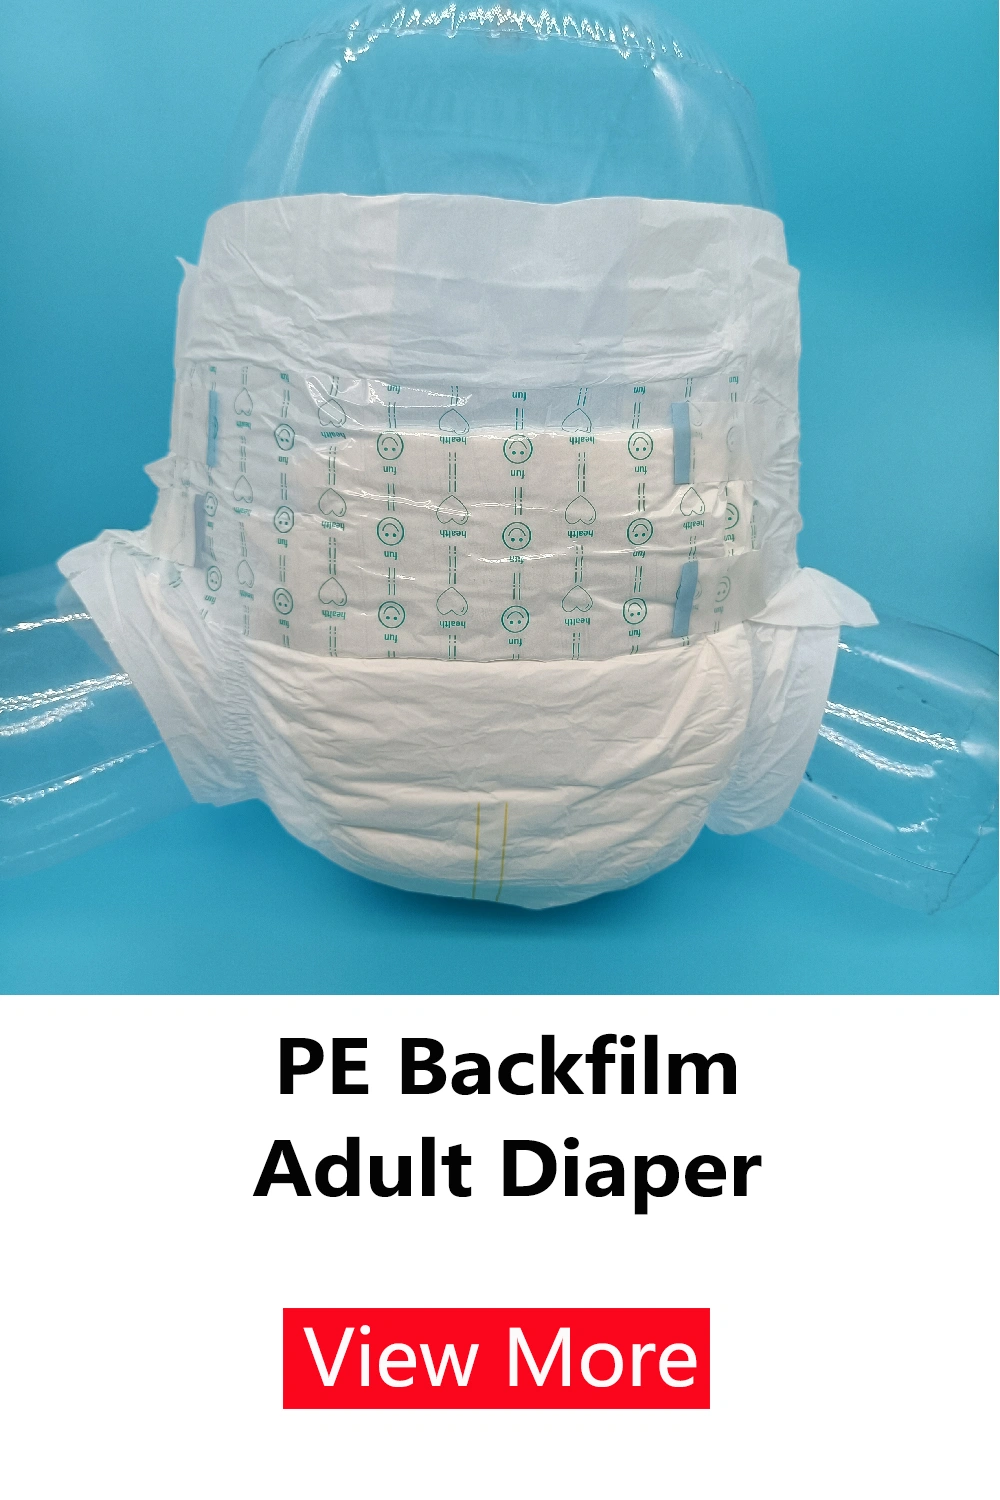 adult diaper adult diaper inner pad